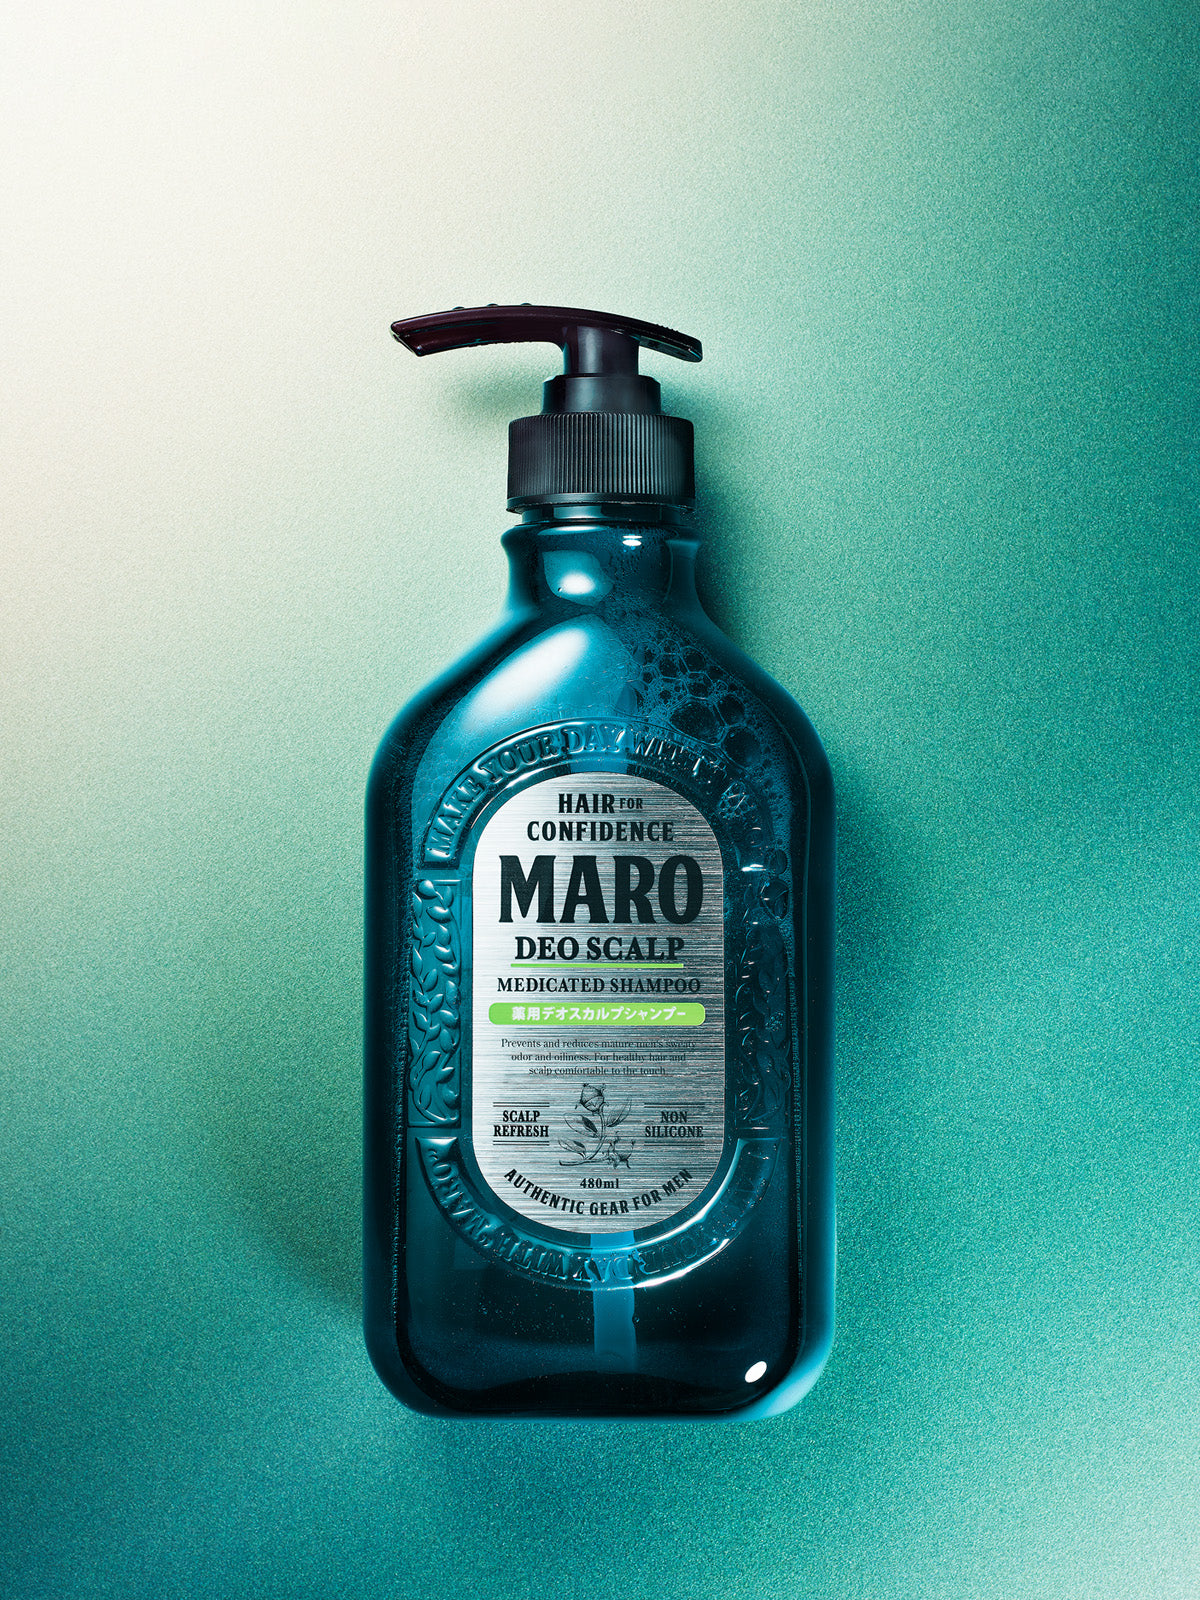 【医薬部外品】薬用 シャンプー [頭皮ケア] グリーンミントの香り MARO マーロ デオスカルプ 480mL